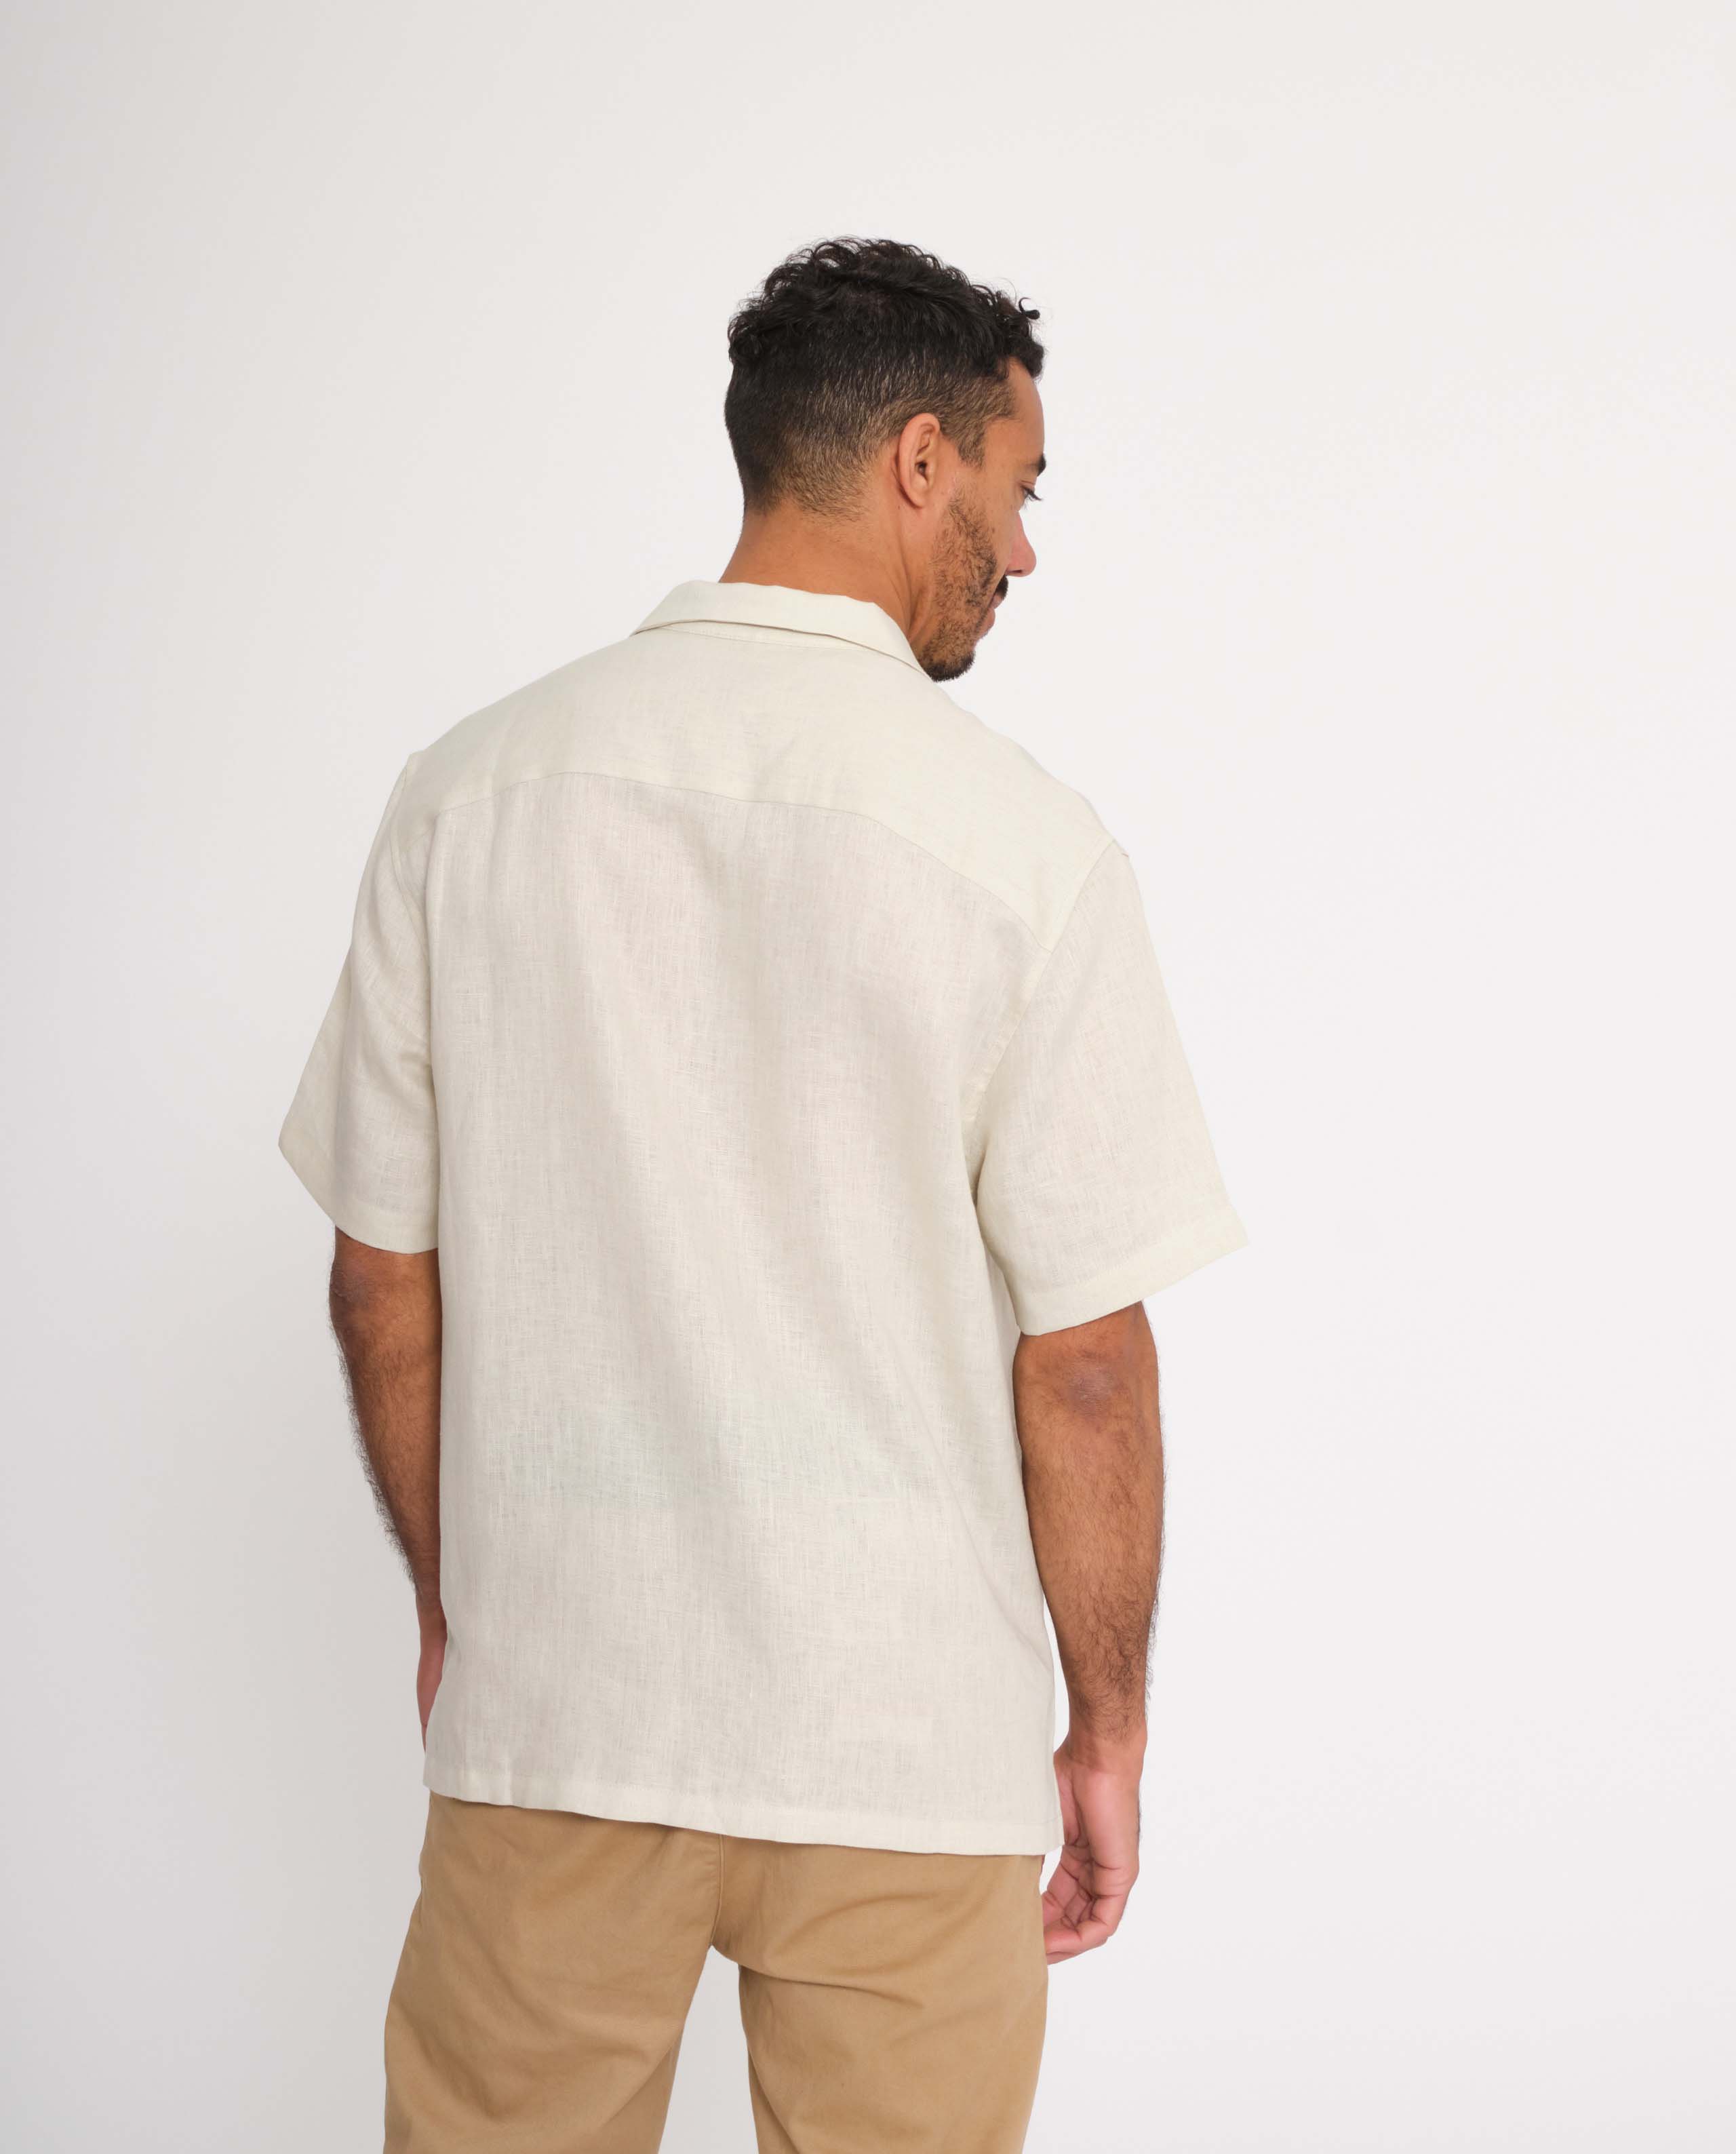 marché commun rotholz homme chemise manches courtes lin naturel